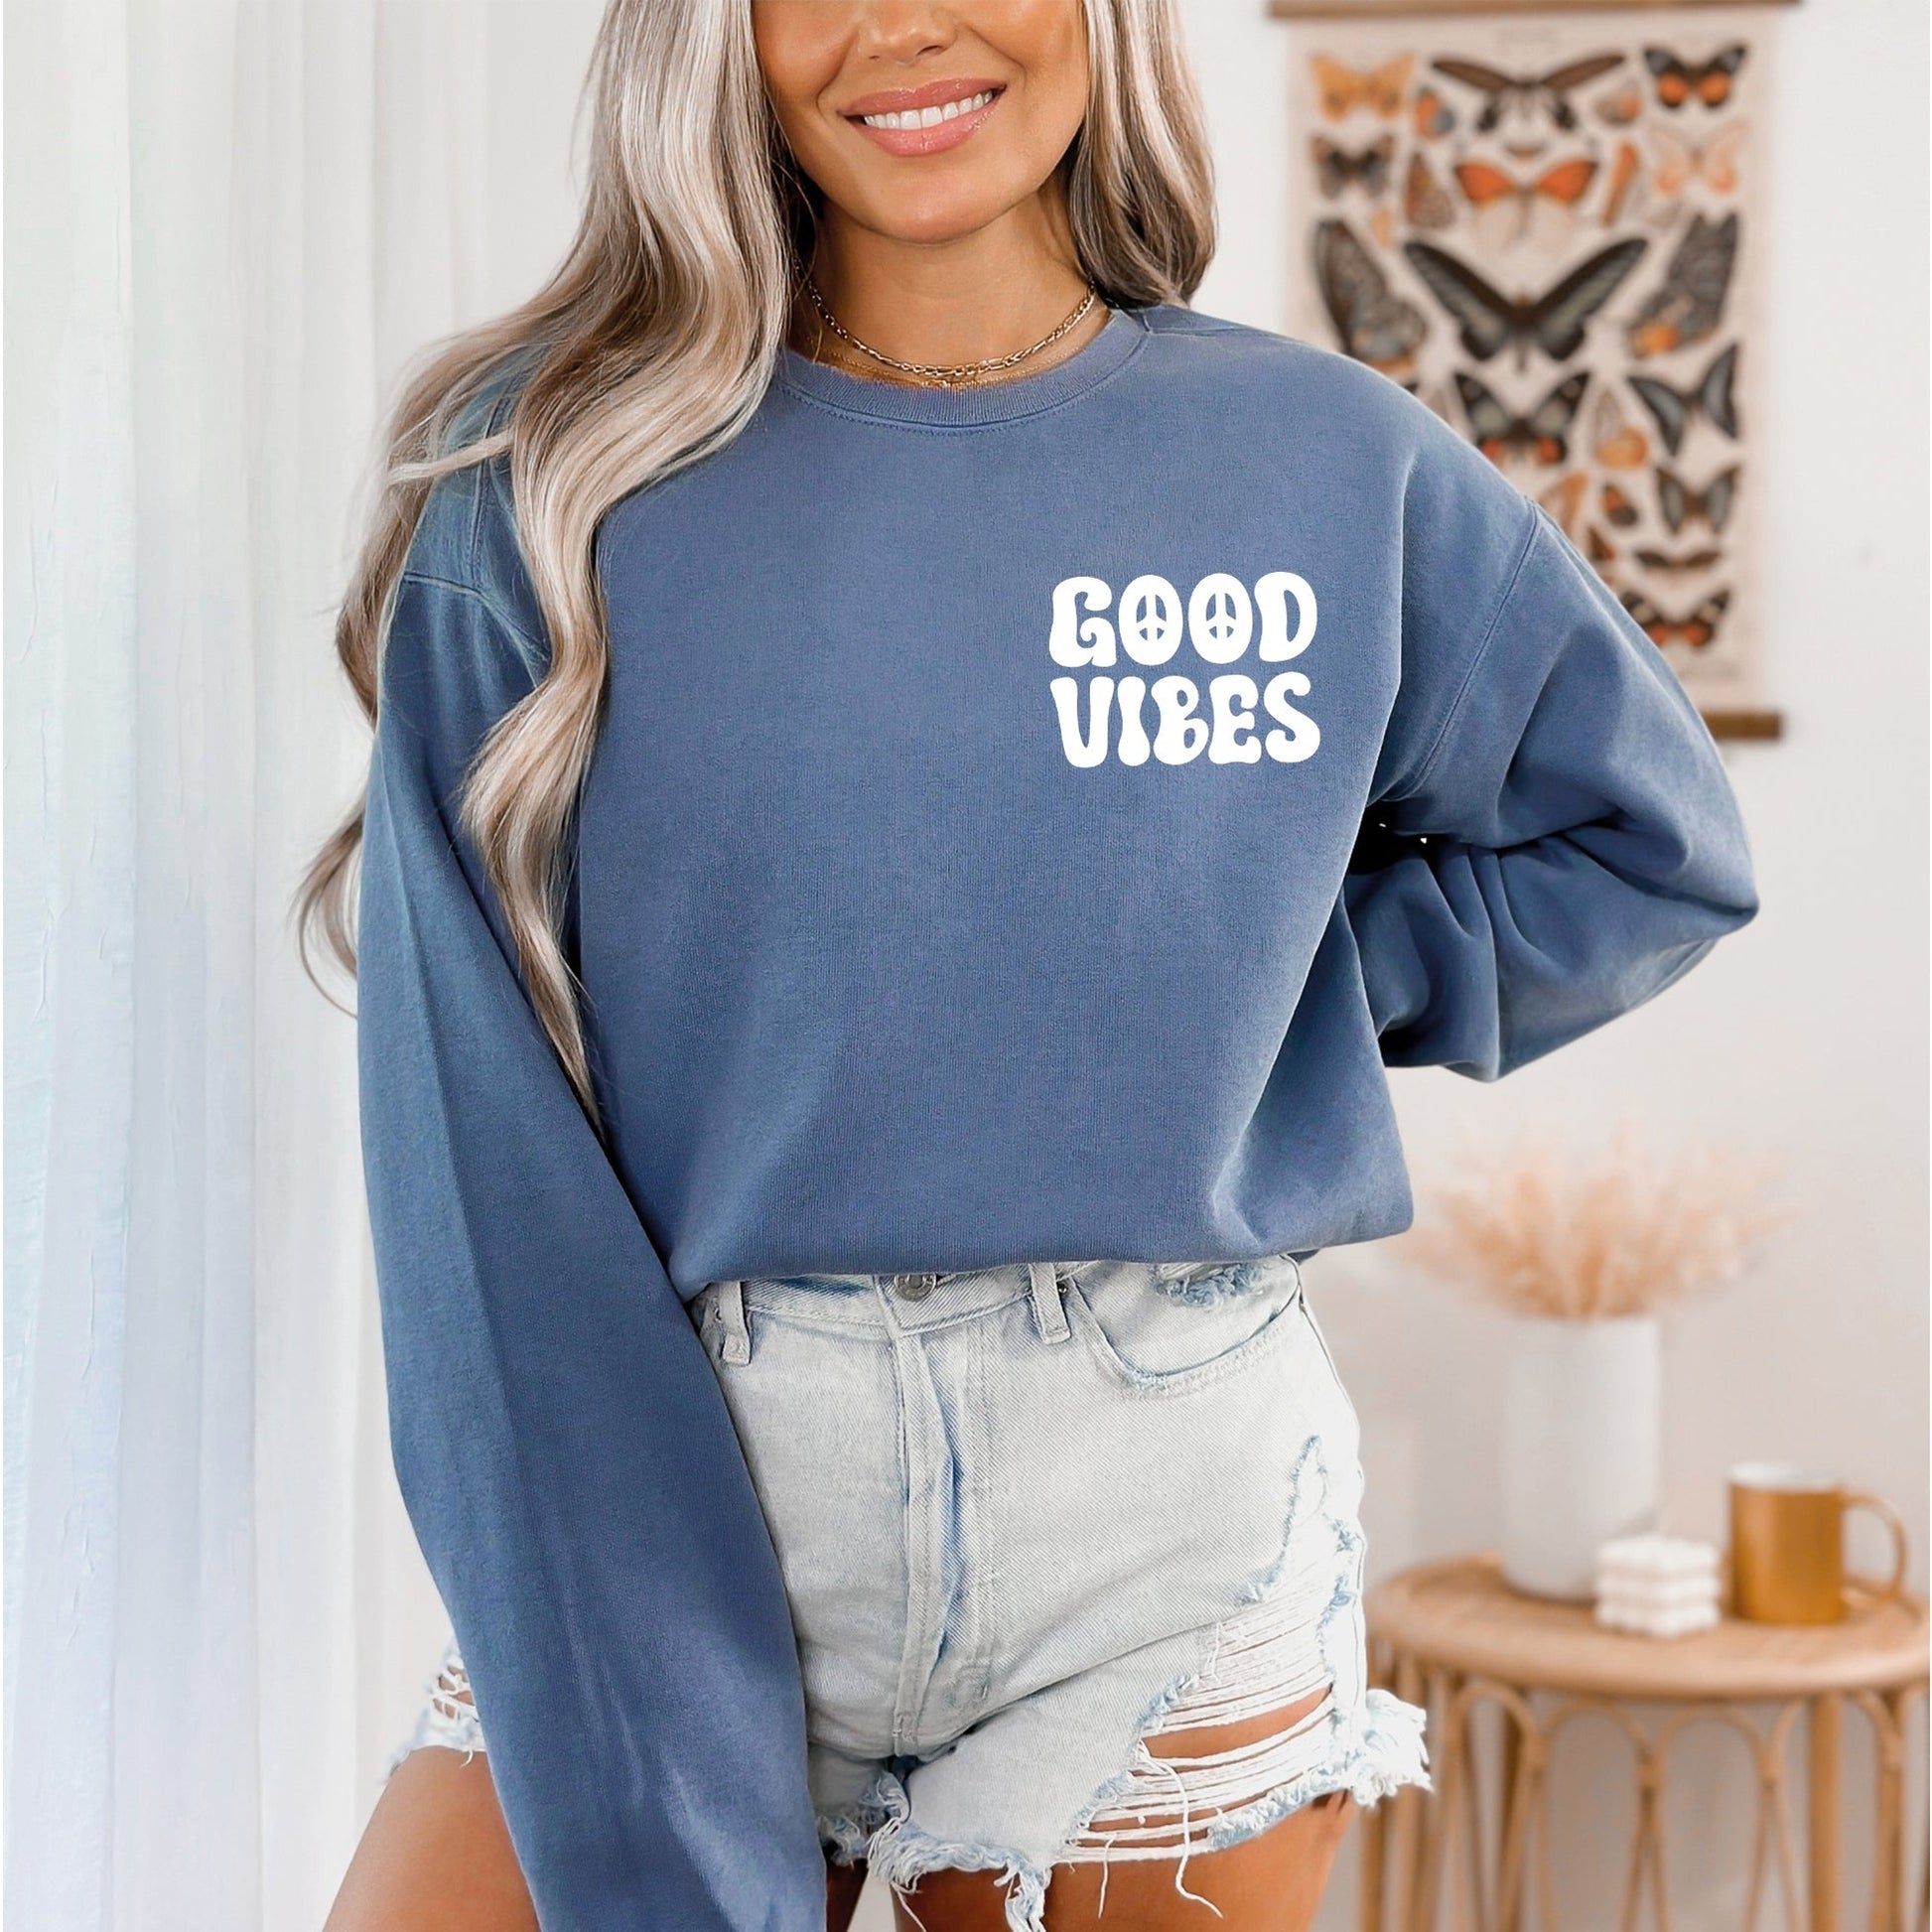 Good Vibes Sweatshirt, Positive Vibes Sweatshirt, Comfort Colors Sweatshirt-newamarketing